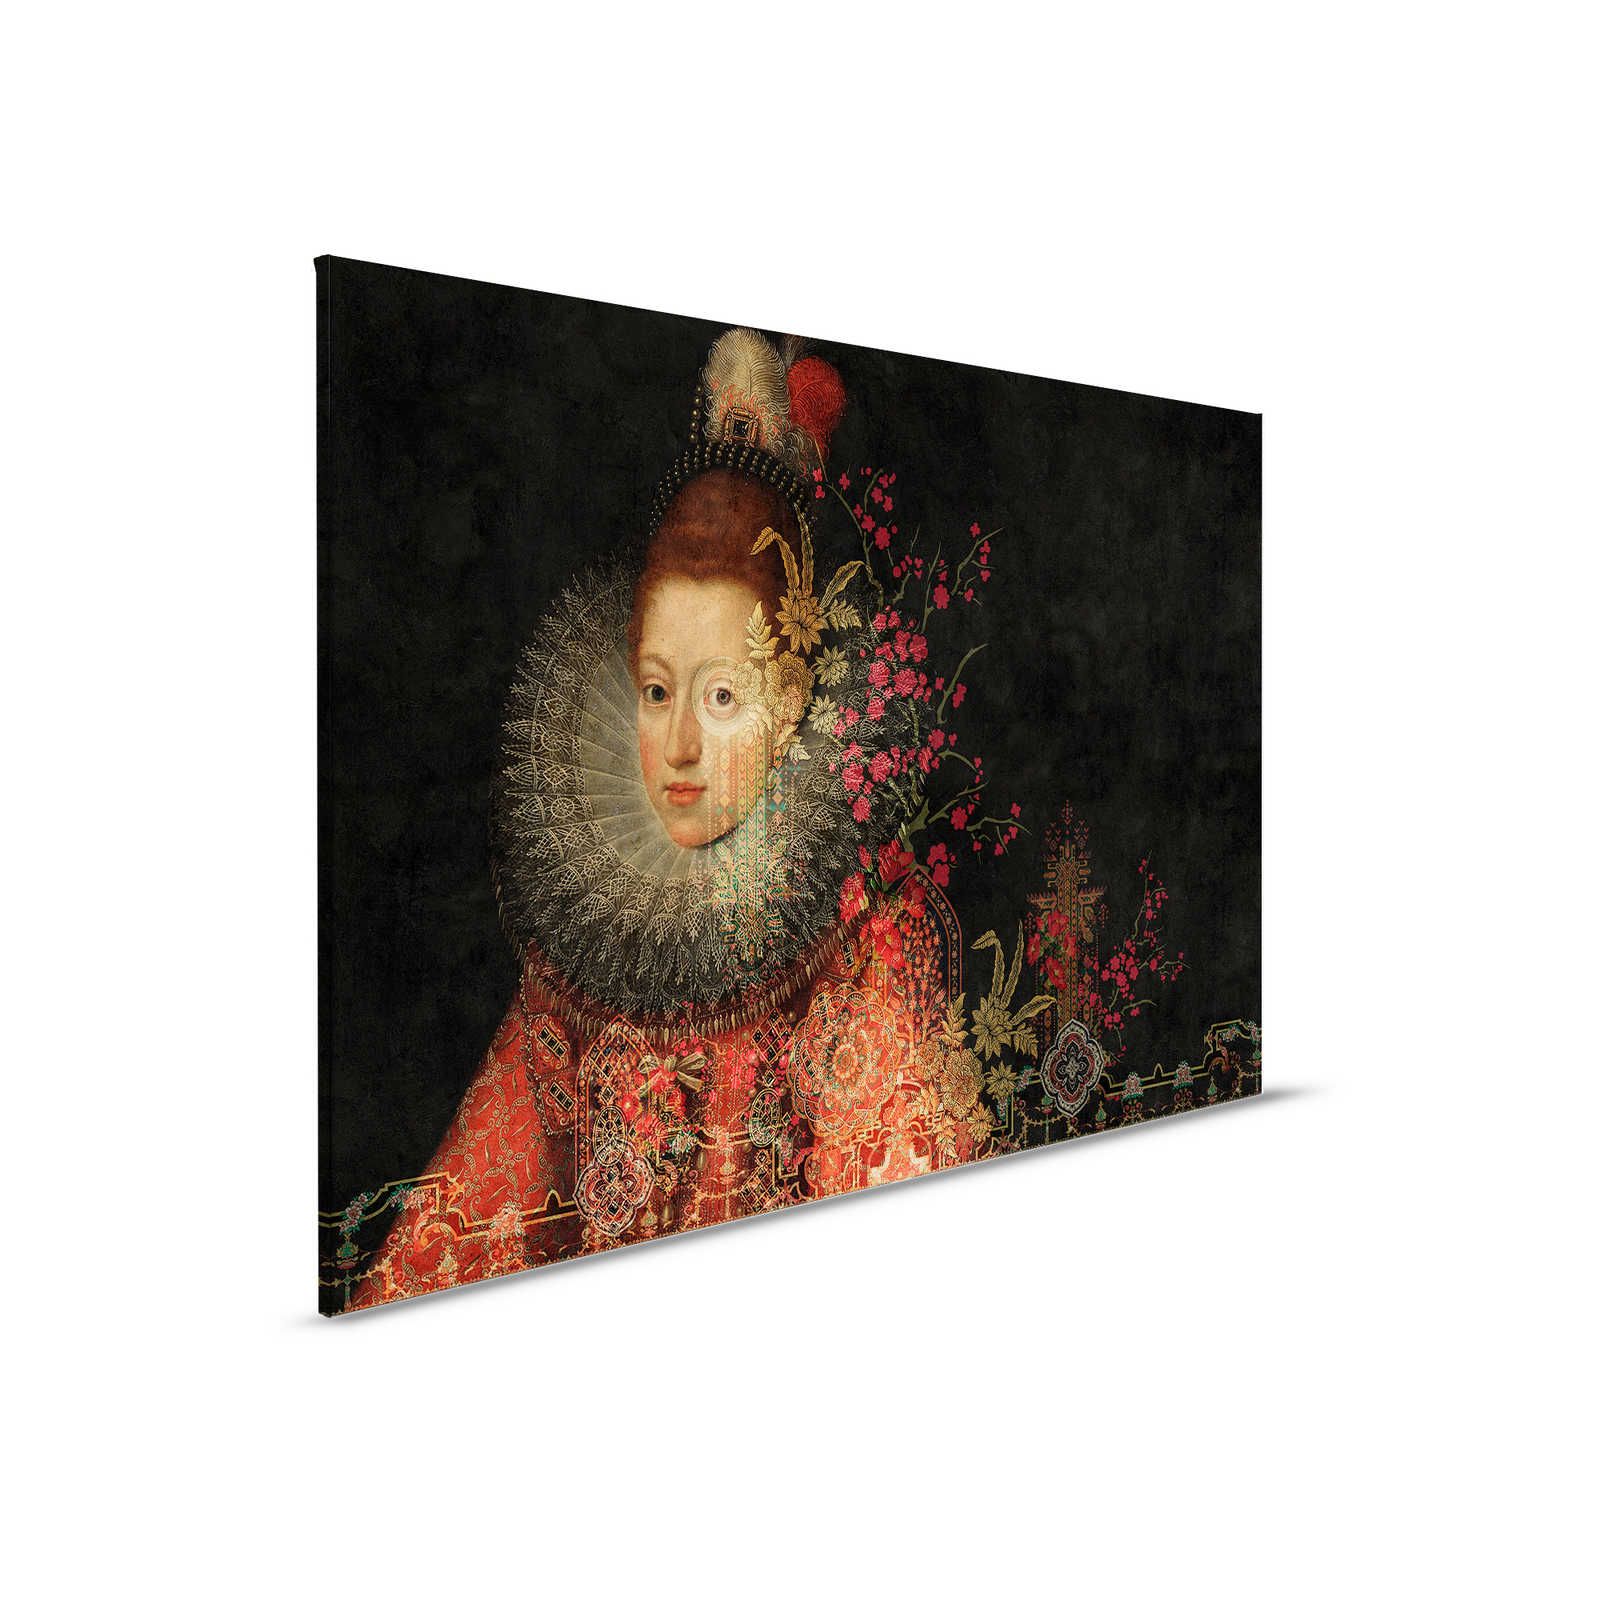 Nella Galleria 1 - Quadro su tela Quadri classici e fiori Grafica - 0,90 m x 0,60 m
